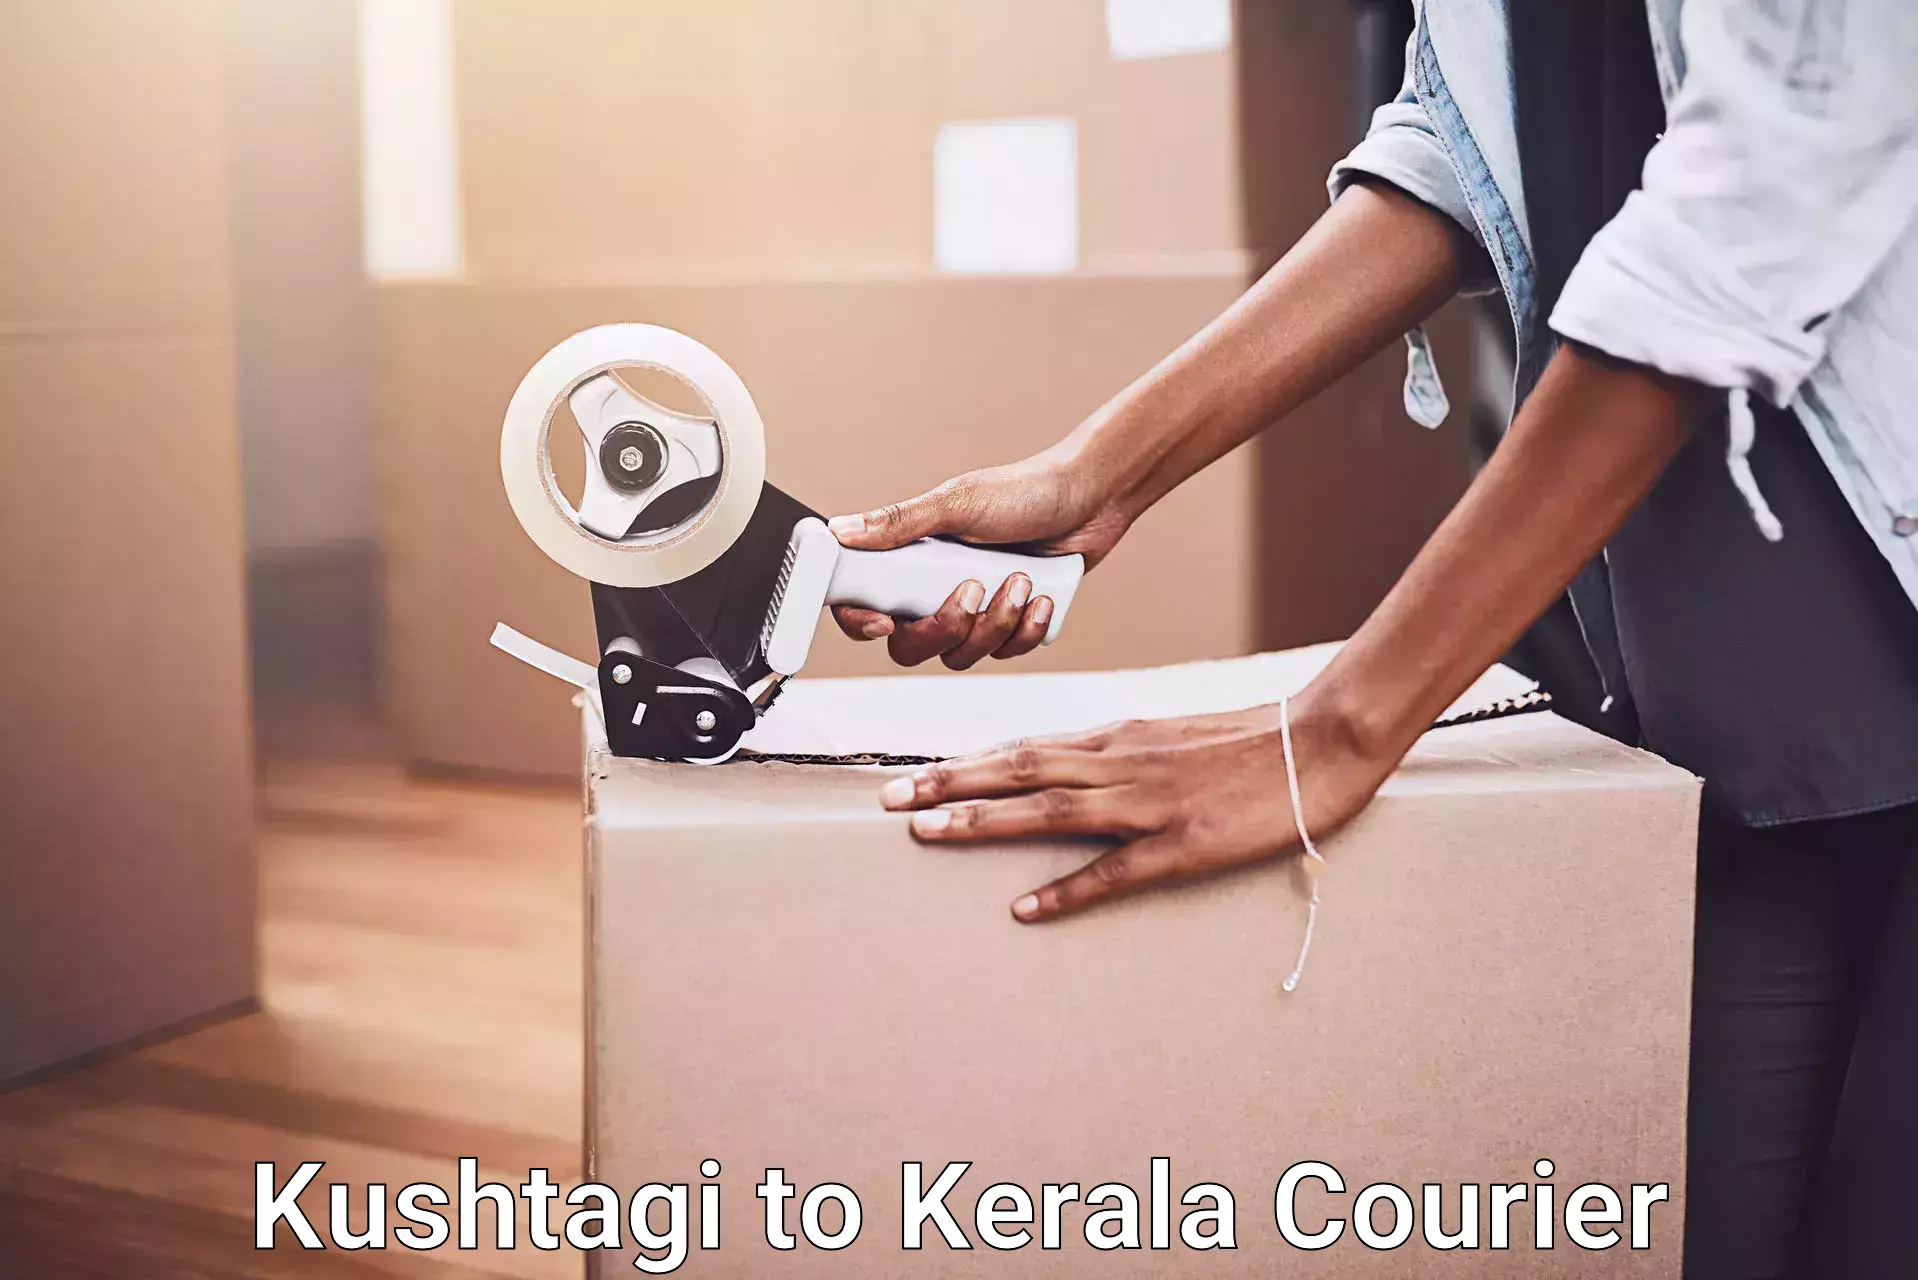 Home shifting experts Kushtagi to Kerala